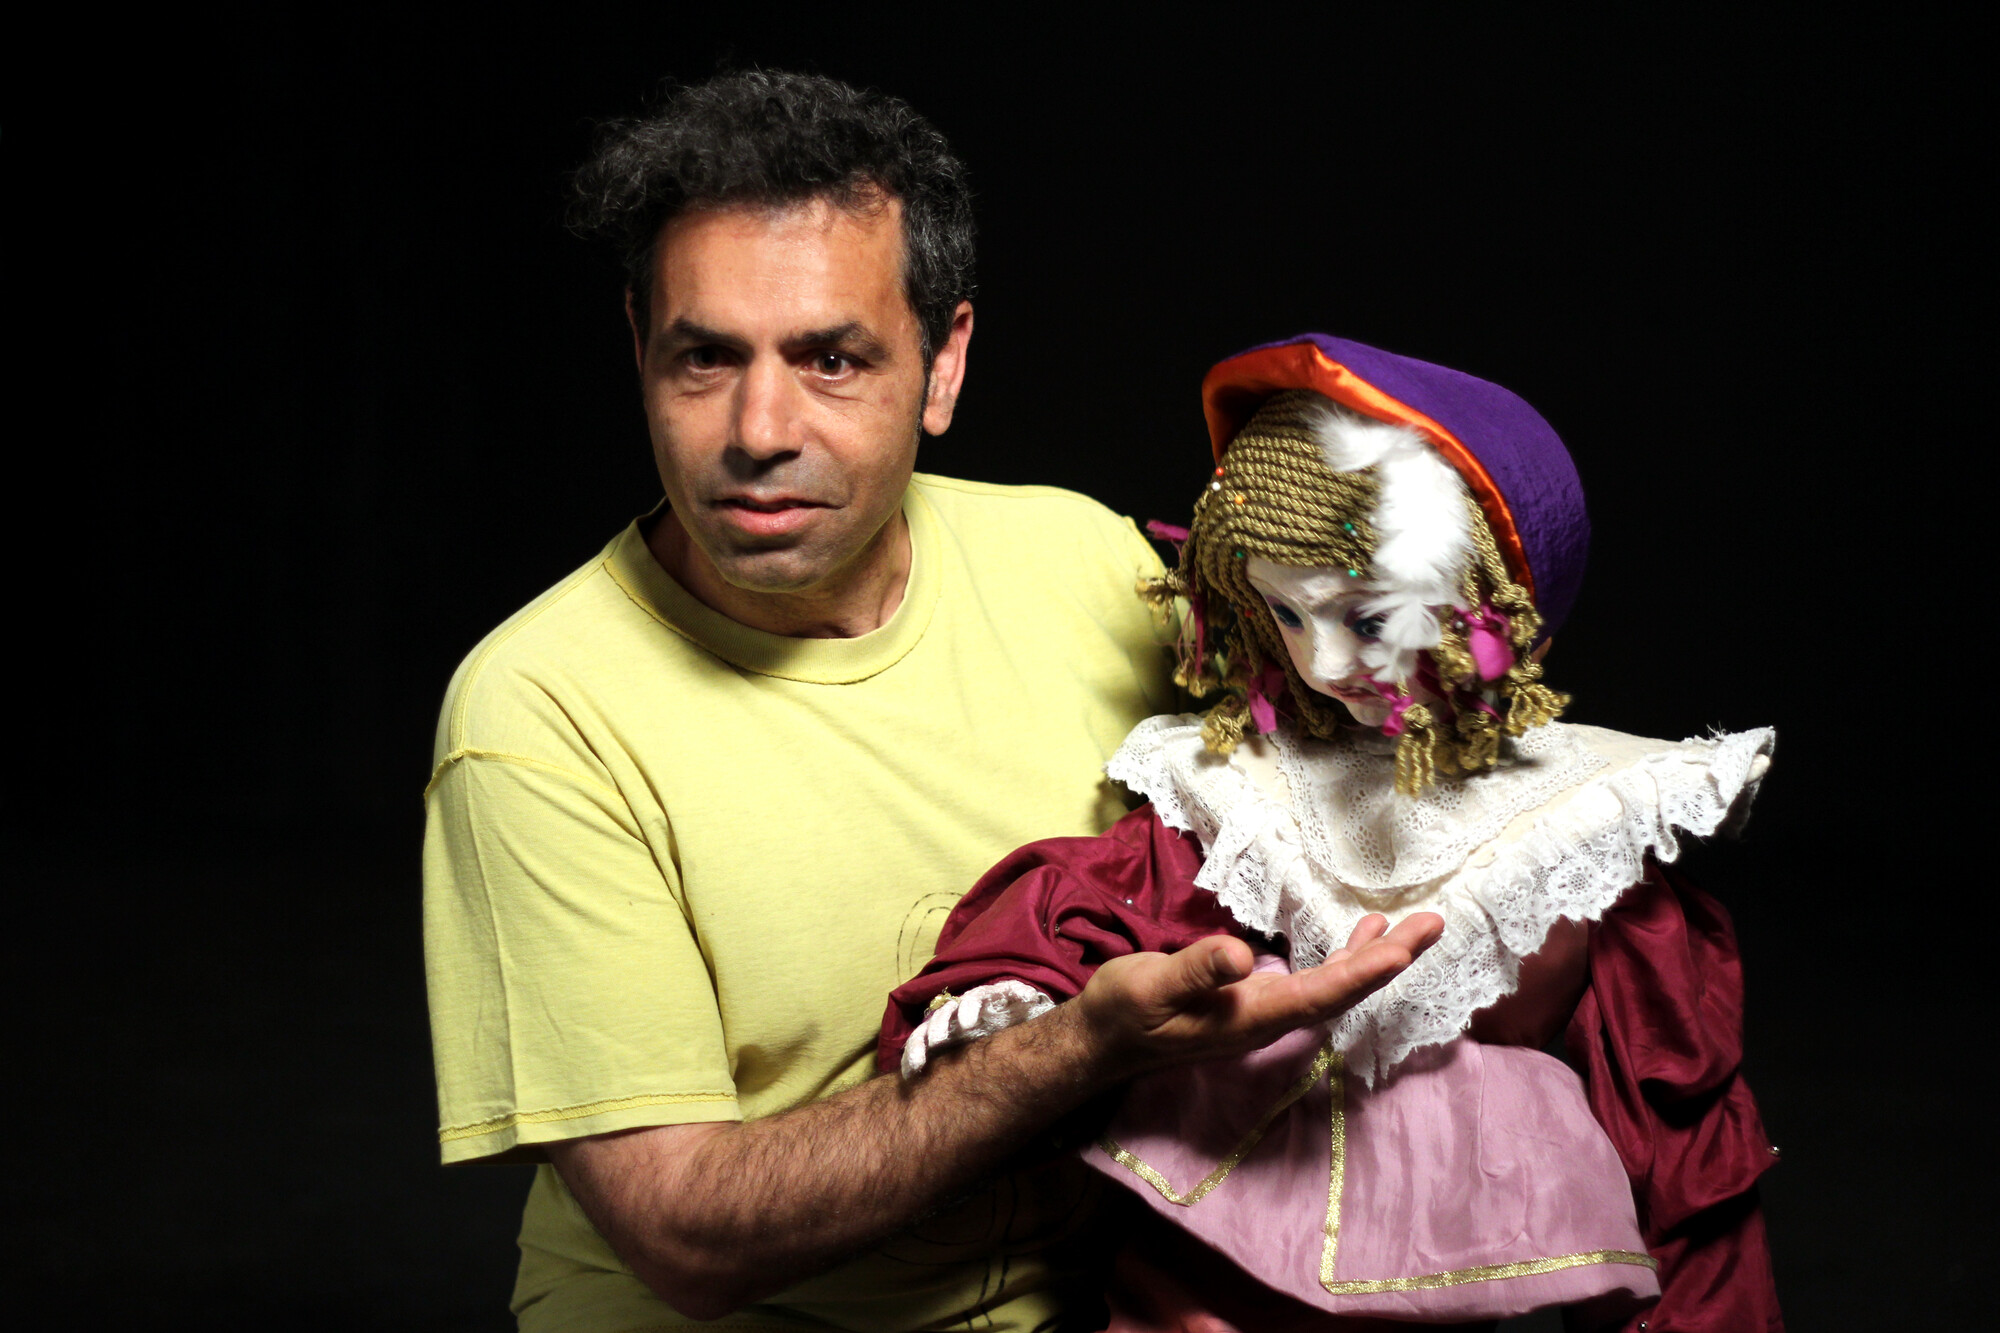 A man holding a puppet resembling a little girl.